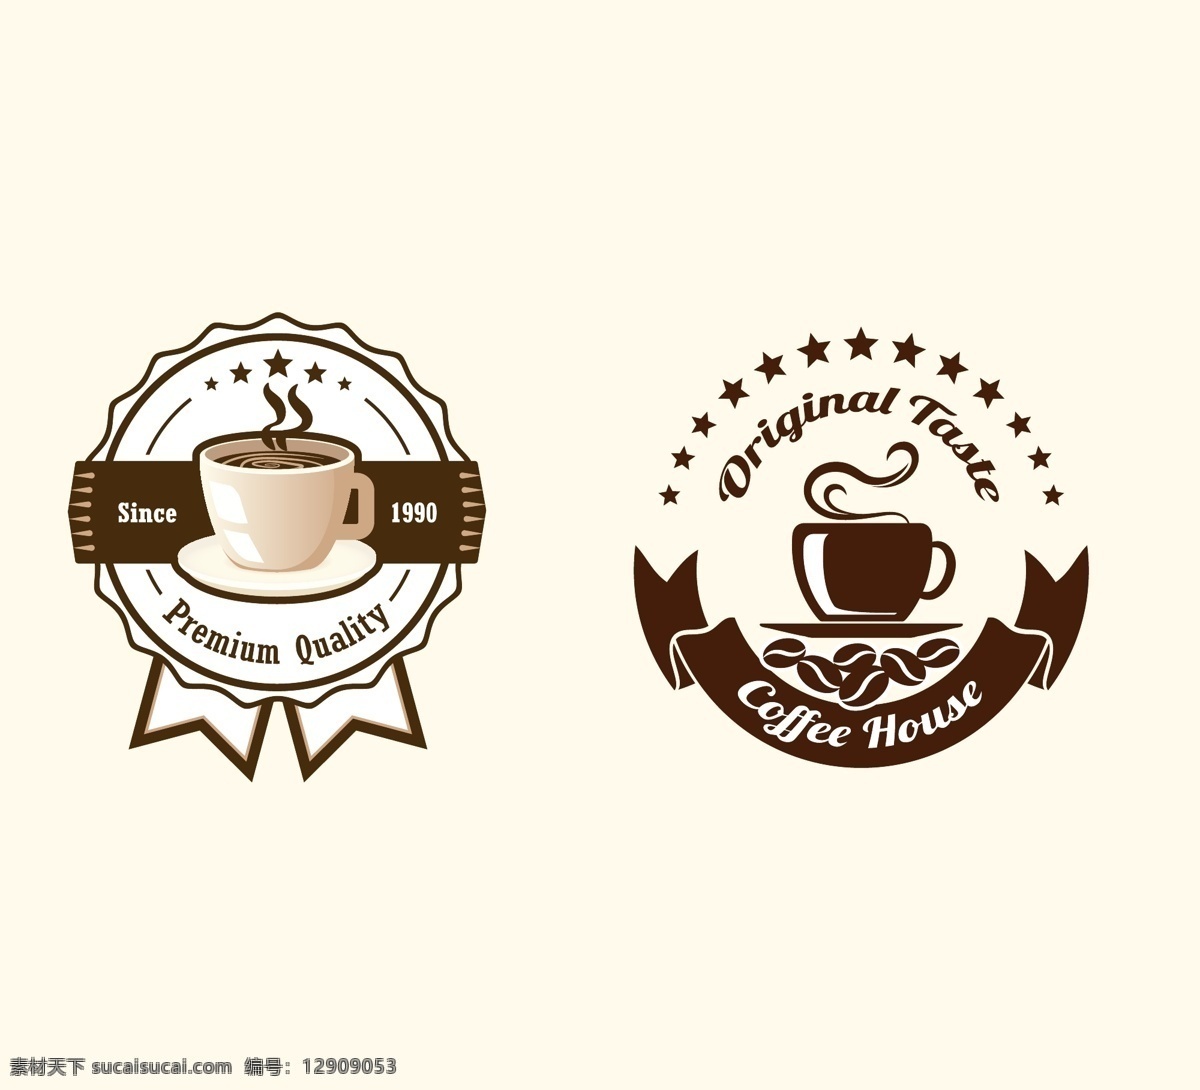 矢量 咖啡 小 图标 咖啡图标 咖啡文化 咖啡小图标 咖啡杯 咖啡标志 复古 复古图标 咖啡矢量 矢量咖啡图标 咖啡豆 喝咖啡